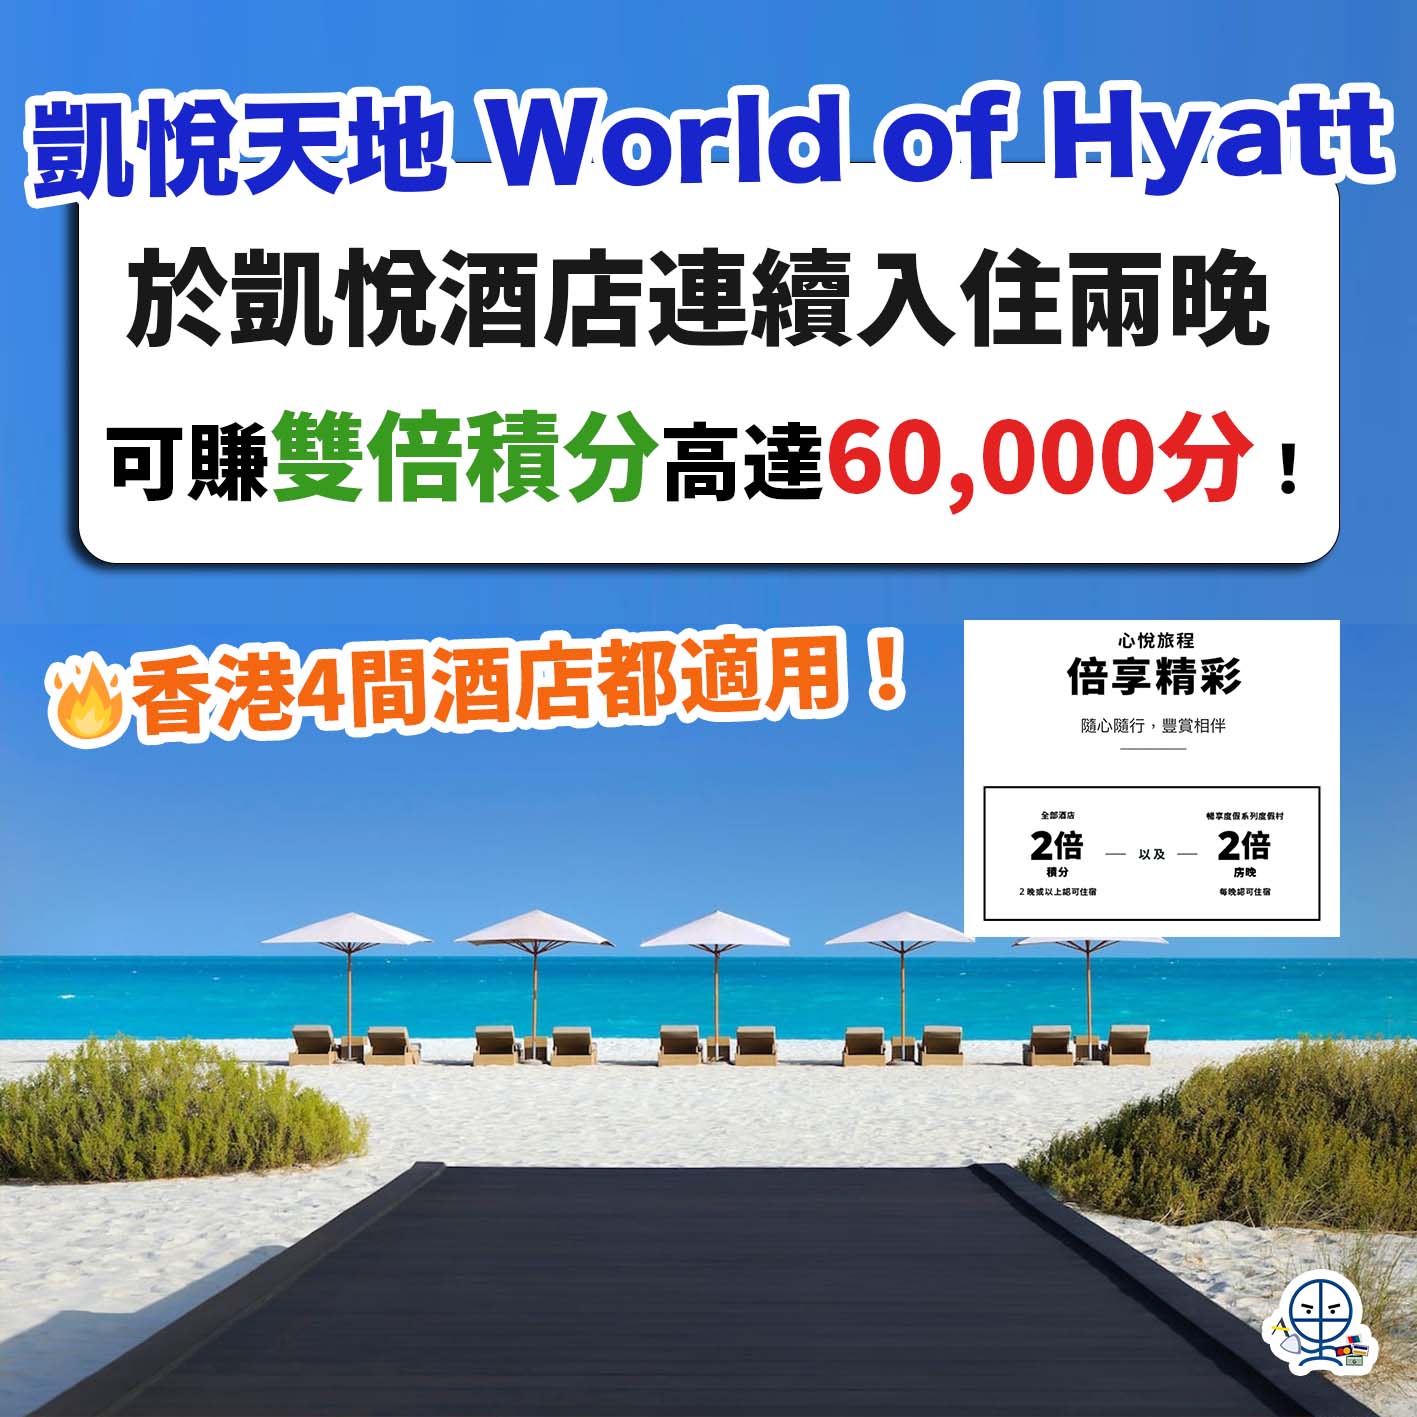 凱悅天地-World of Hyatt-staycation